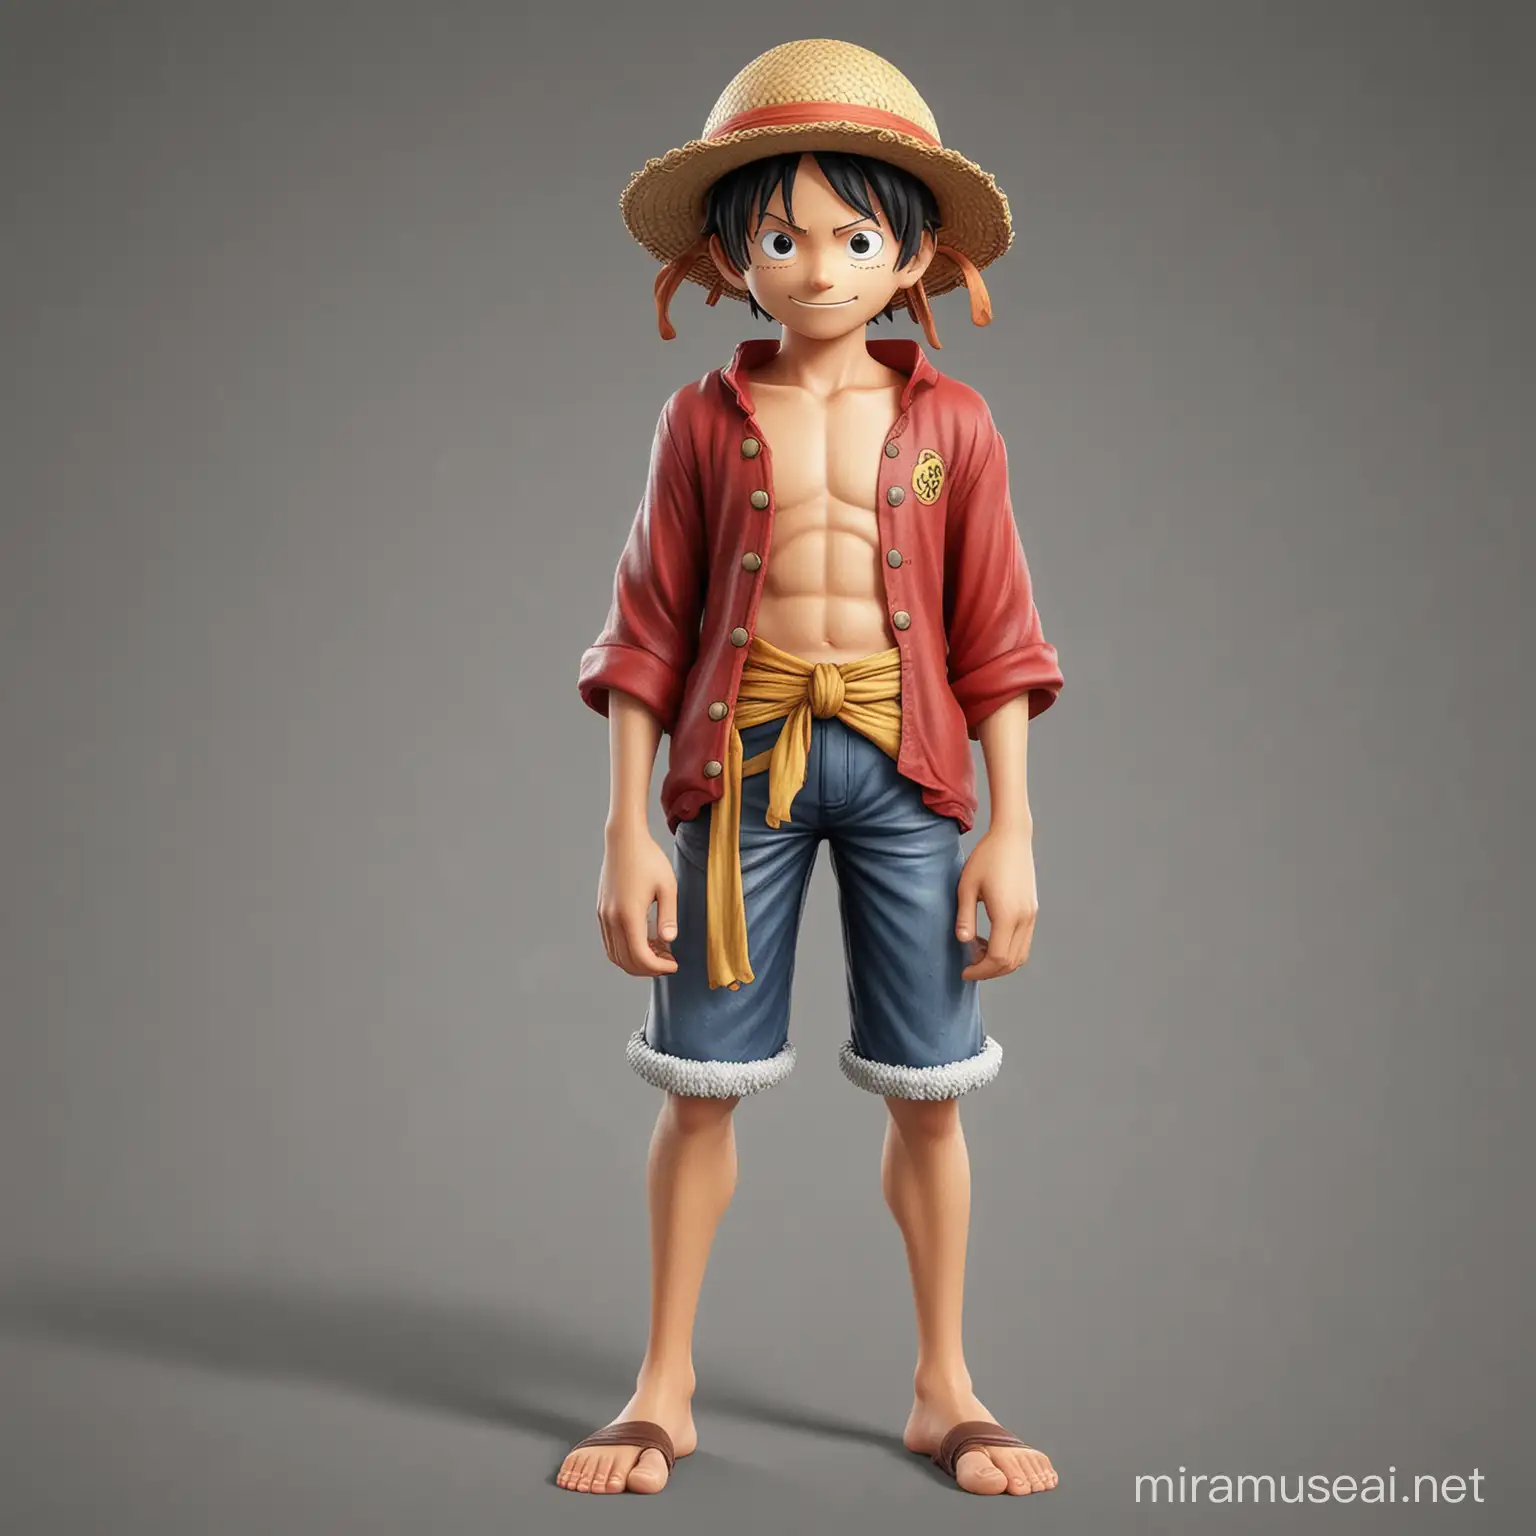 "Hola, busco un enimacion en 3D. Me gustaría una miniatura de Luffy, el personaje de One Piece en la adaptación de Netflix. Quiero que Luffy esté atado de pies a manos por separado, como si estuviera siendo estirado, para que se vea que él es de goma. También quiero que Luffy tenga su sombrero y su ropa típica." Todo eso en 3D 